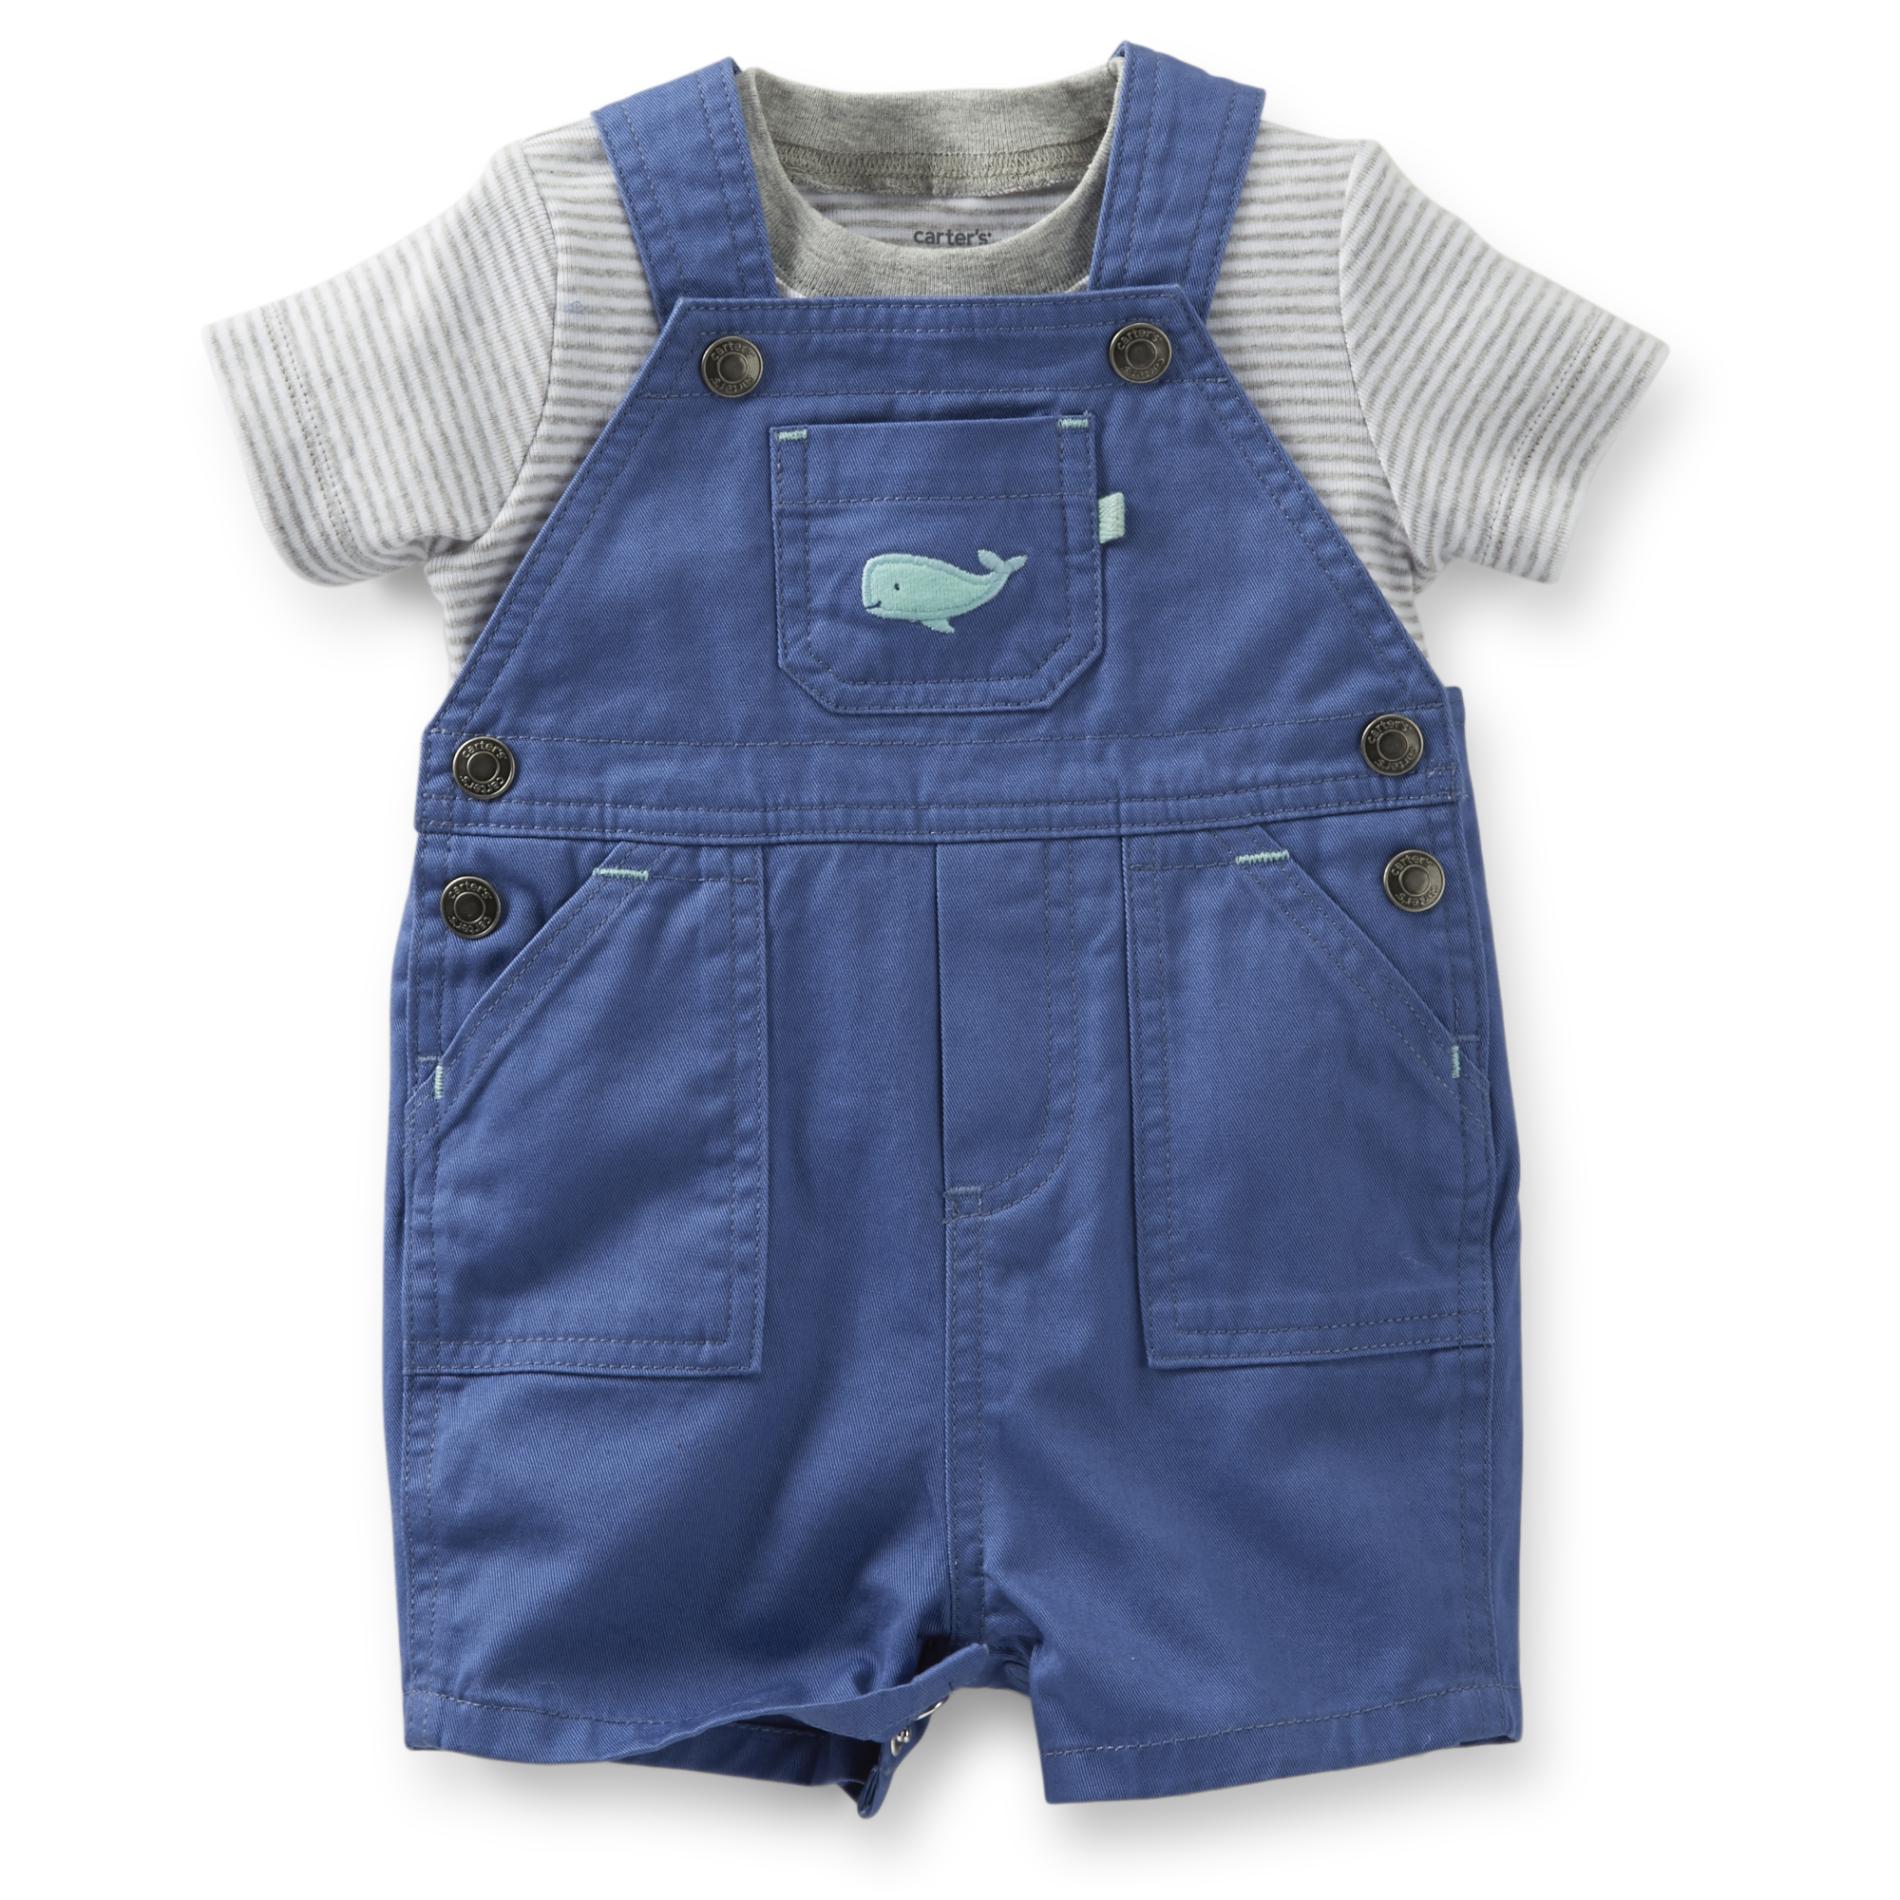 Carter's Newborn & Infant Boy's Shortall & T-Shirt - Whale